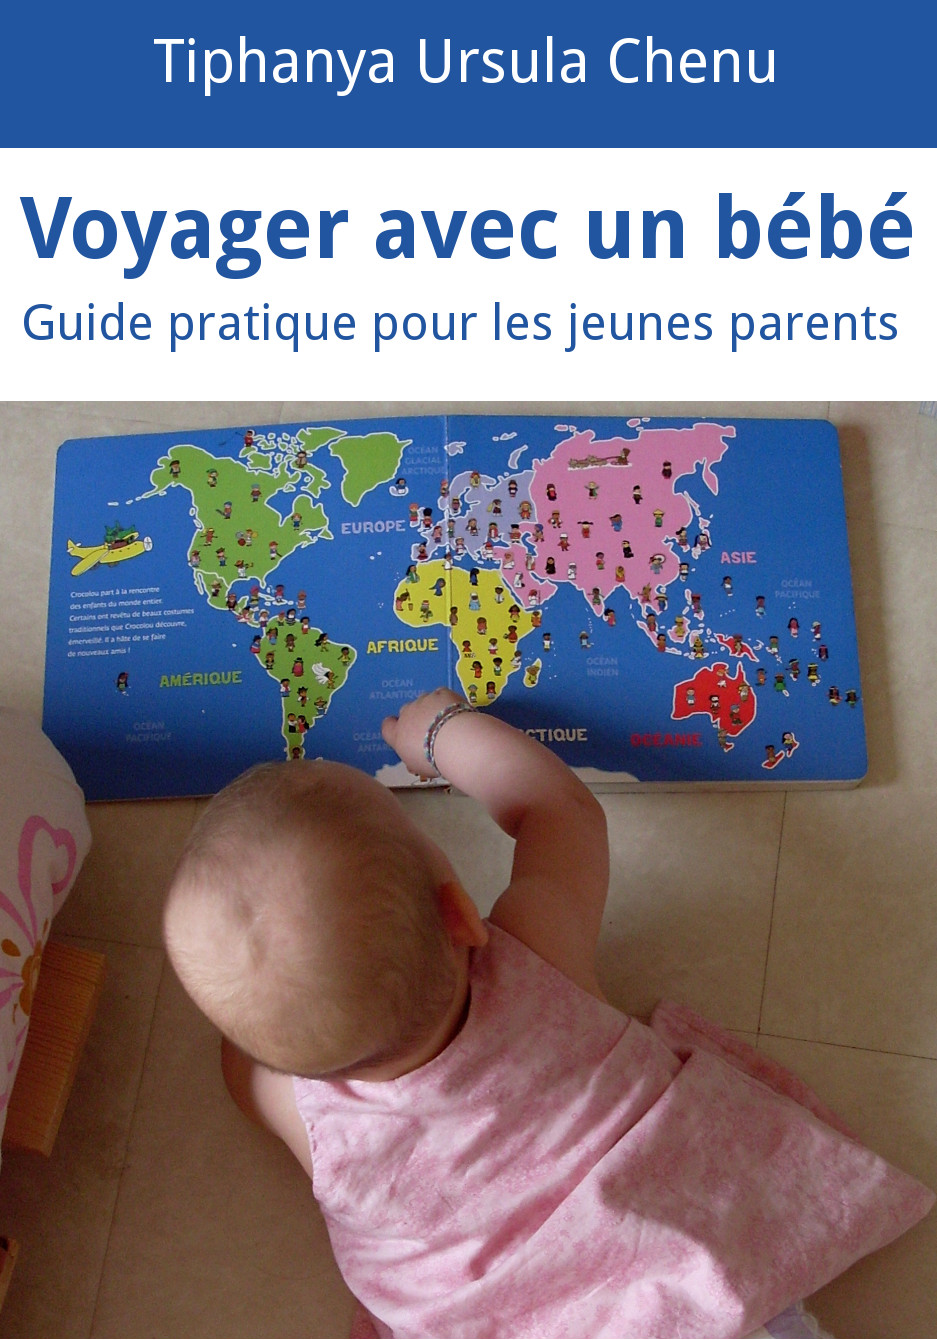 Voyager avec un bébé : guide pratique pour les jeunes parents